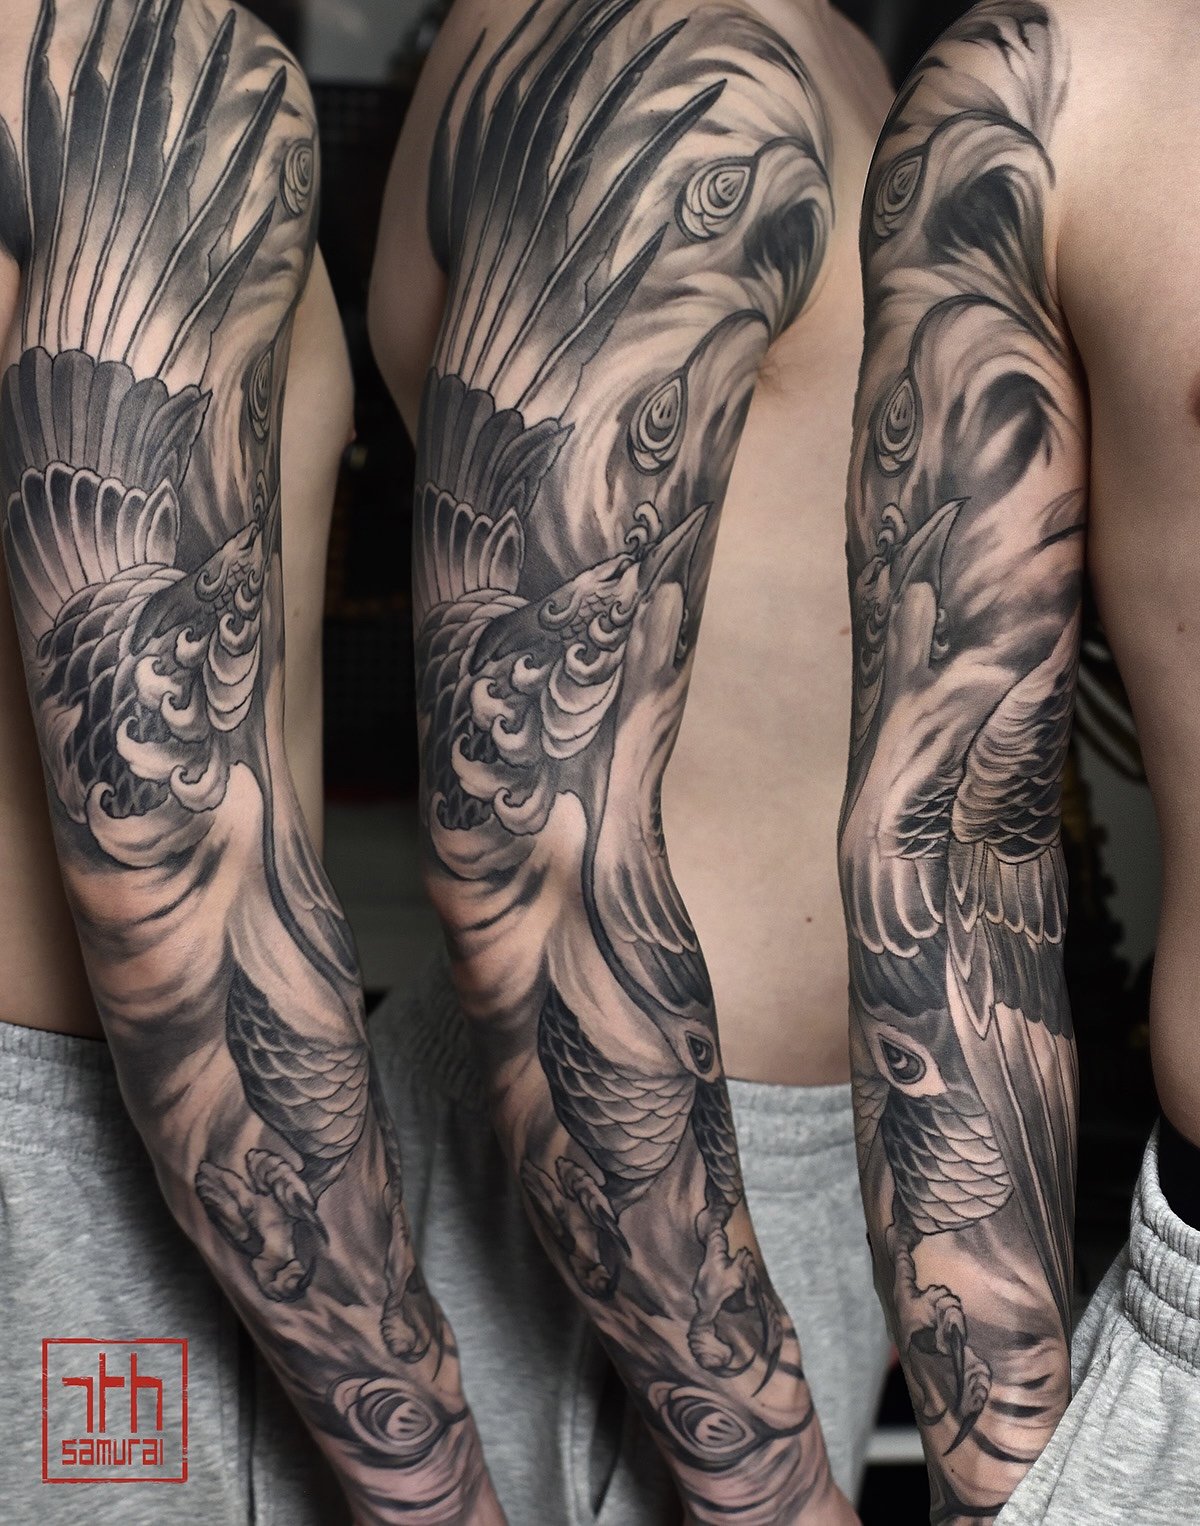 fire feathers phoenix pheonix arise from ashes   Men's asian neo japanese sleeve tattoo  asian Tattoo artist: Kai at 7th Samurai. YEG Edmonton, Alberta, Canada best 2023